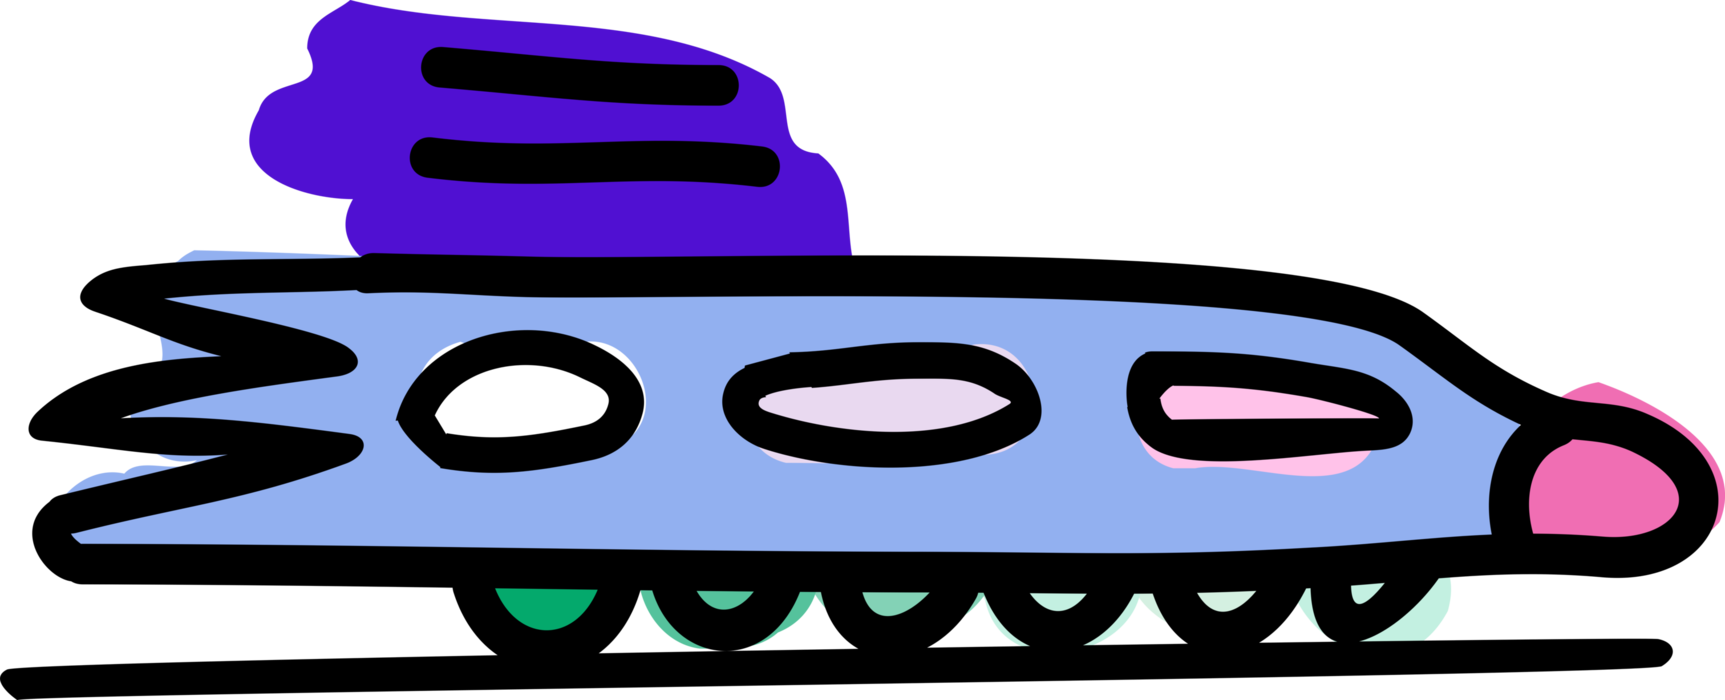 Vector Illustration of Shinkansen Japanese High-Speed Railway Bullet Train